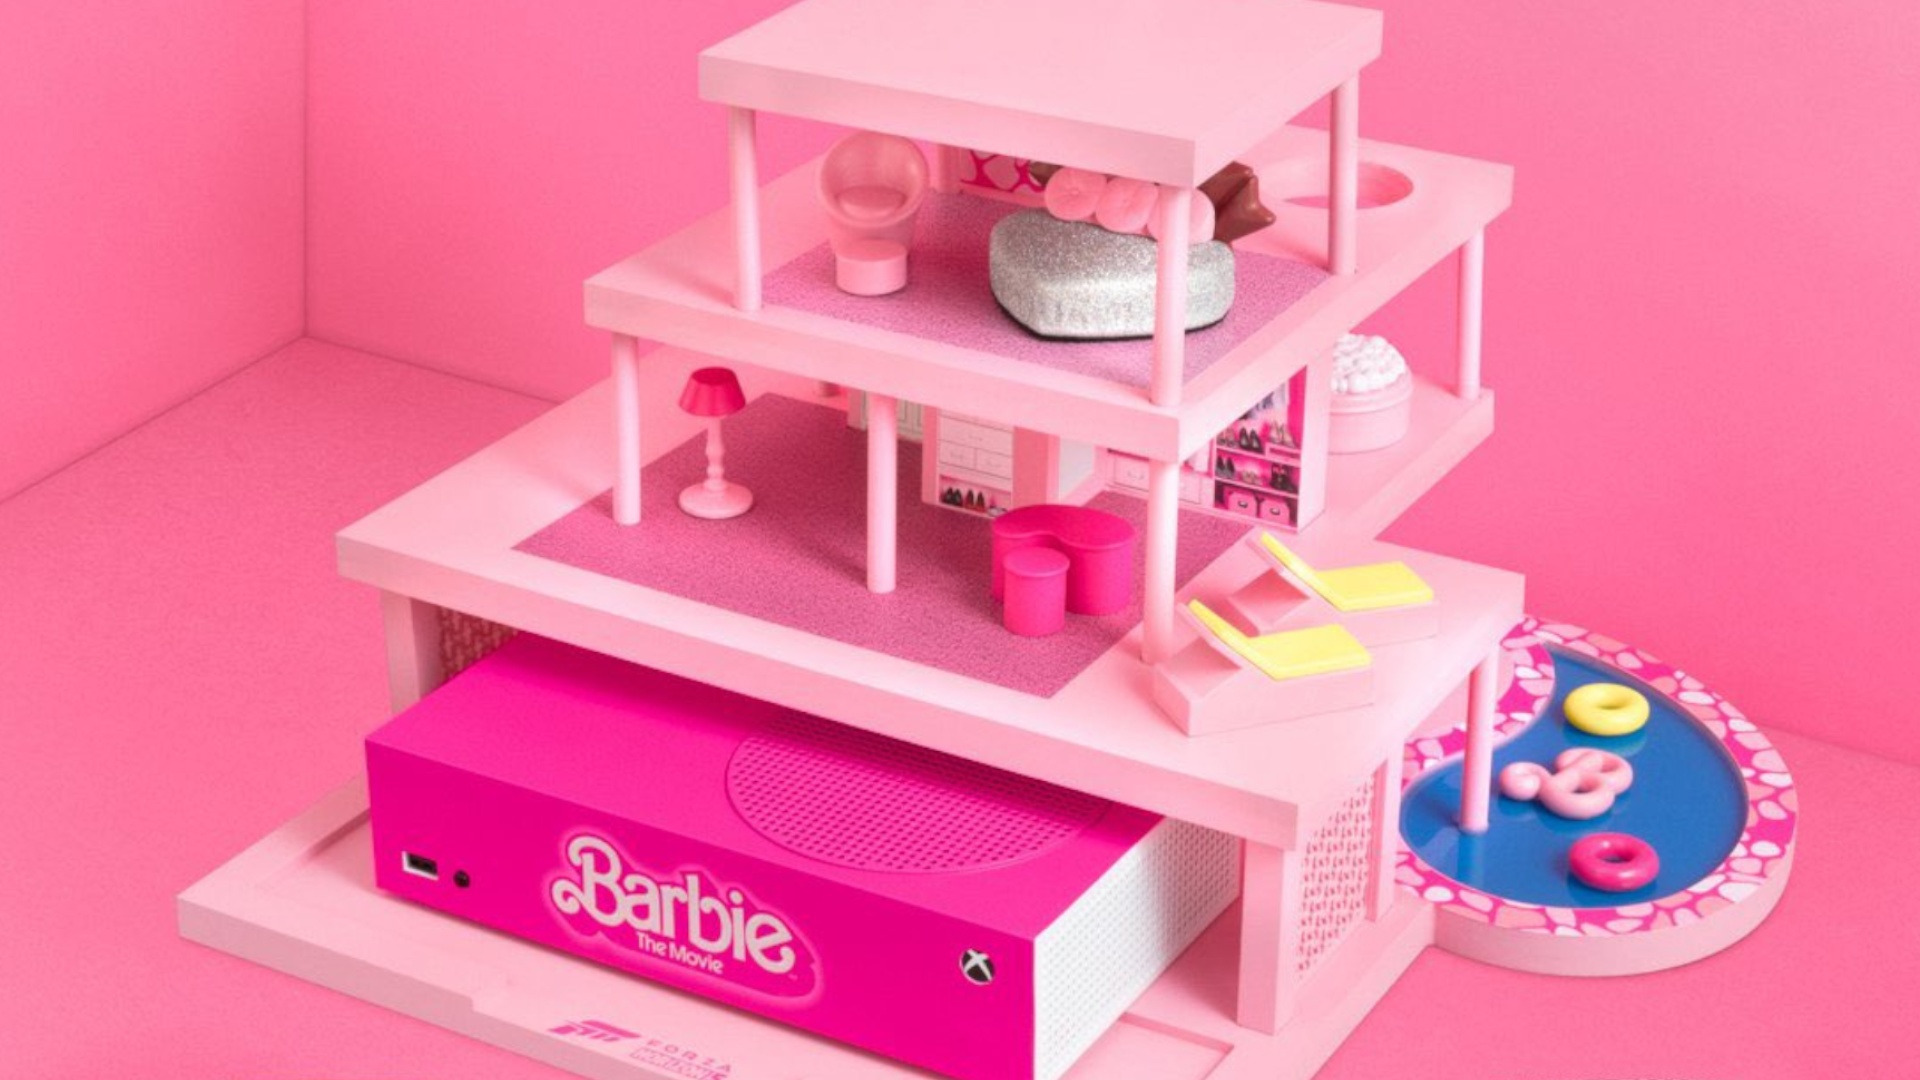 #Xbox-Controller, Kerzen, Luxusvilla: Das Marketing für den Barbie-Film gerät etwas außer Kontrolle